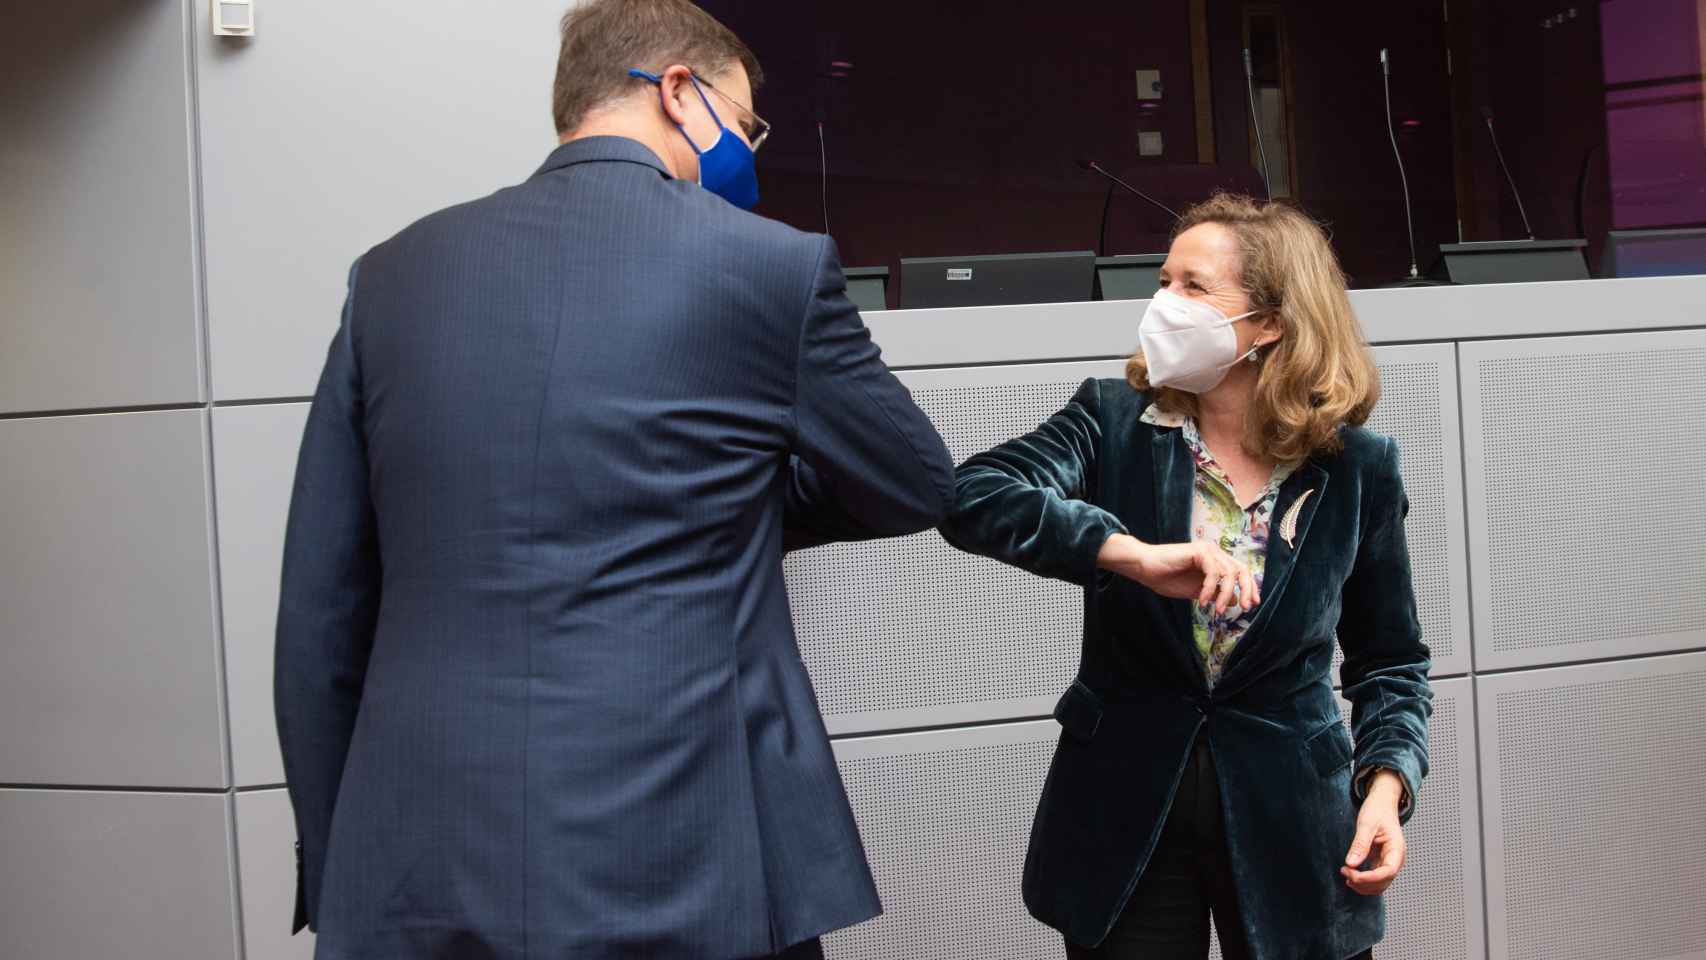 Nadia Calviño saluda al vicepresidente económico de la Comisión, Valdis Dombrovskis, durante su última visita a Bruselas